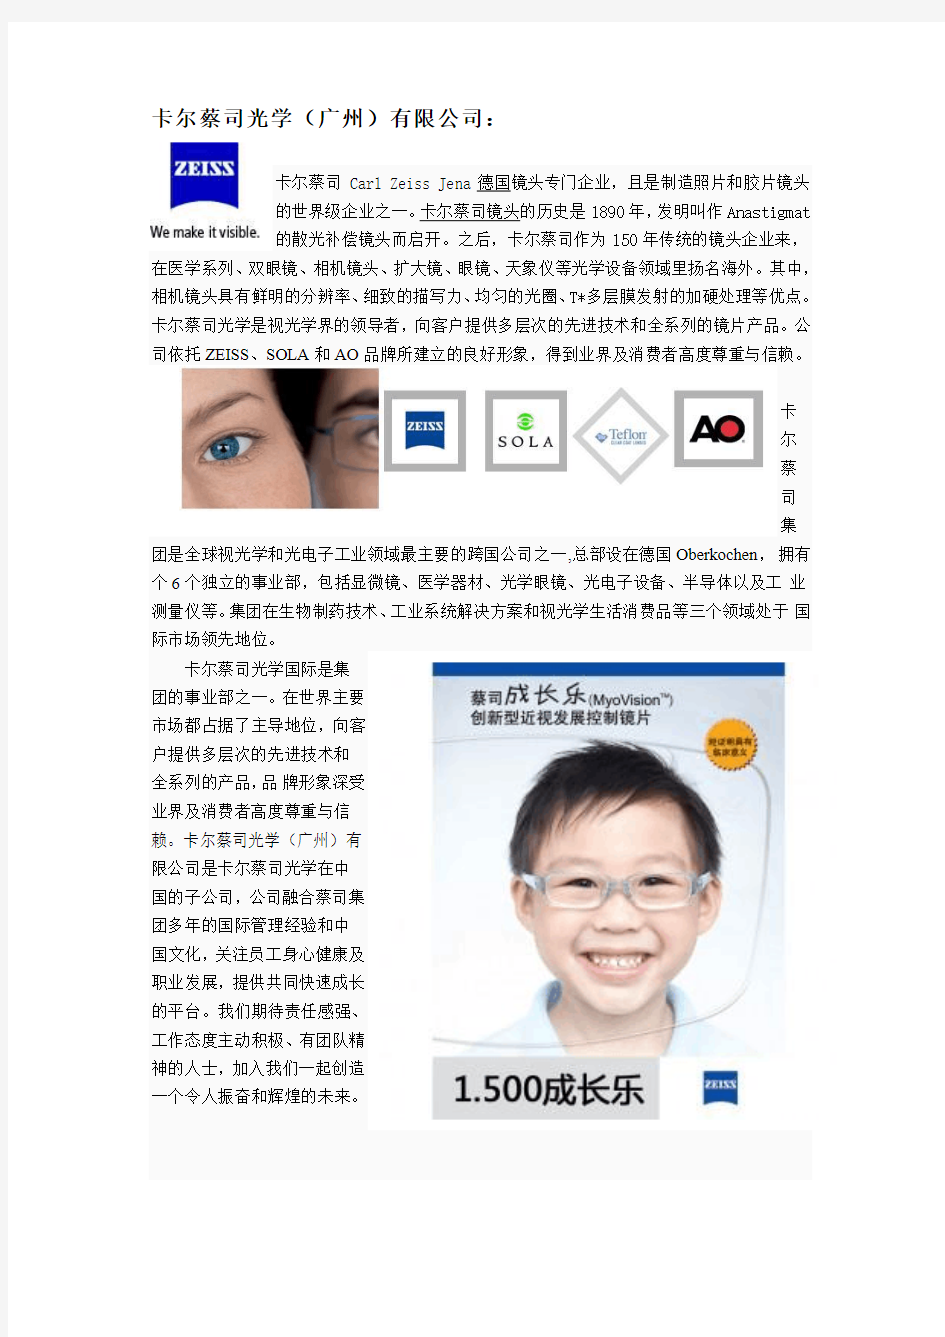 百视通眼镜经营品牌介绍